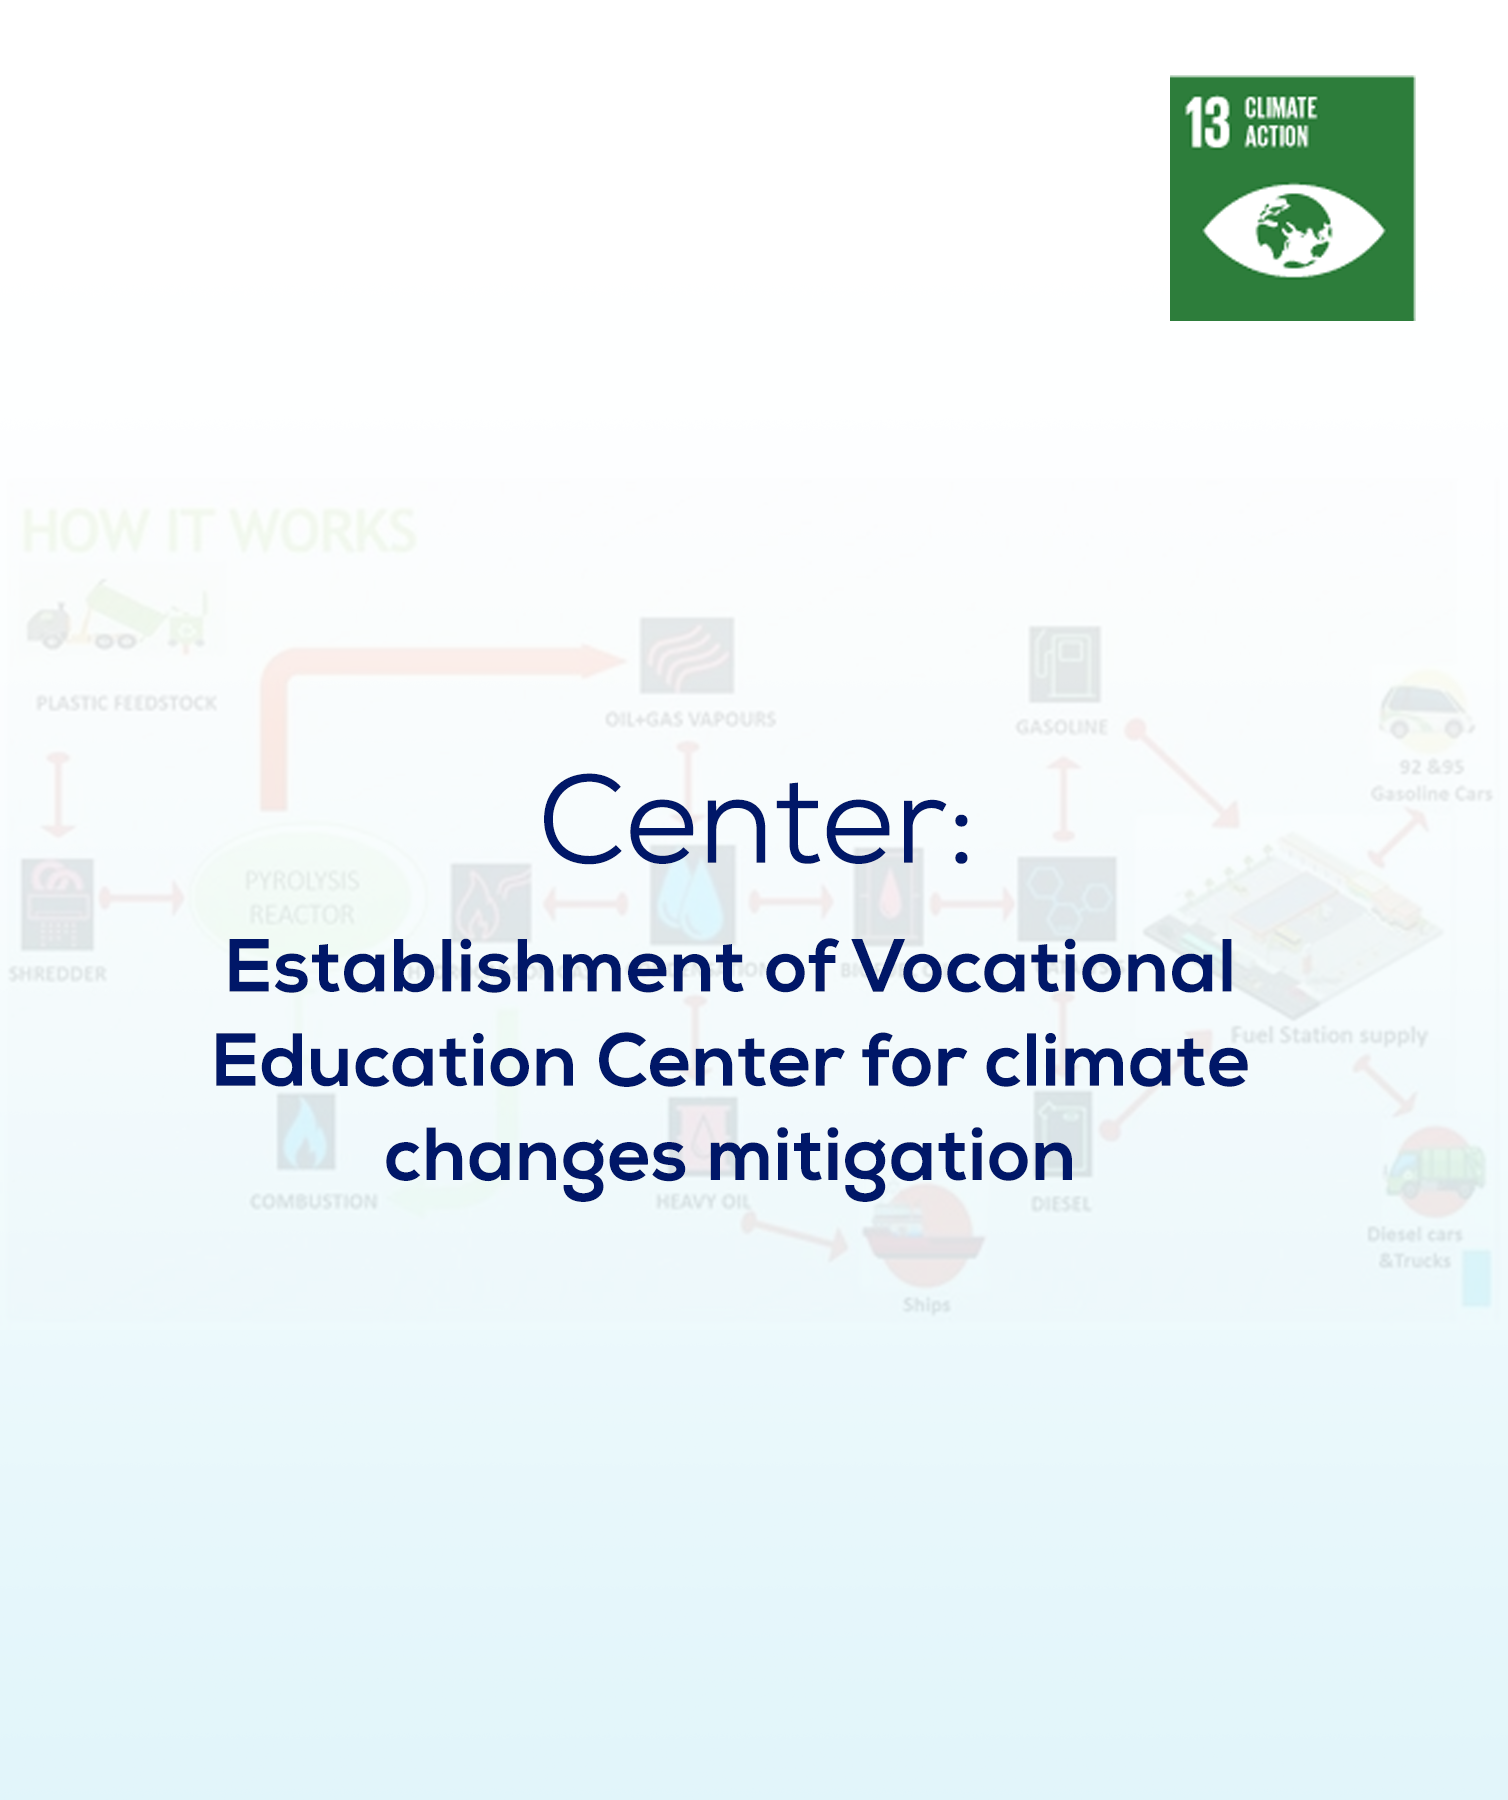 Establishment of Vocational Education Center for climate changes mitigation practices